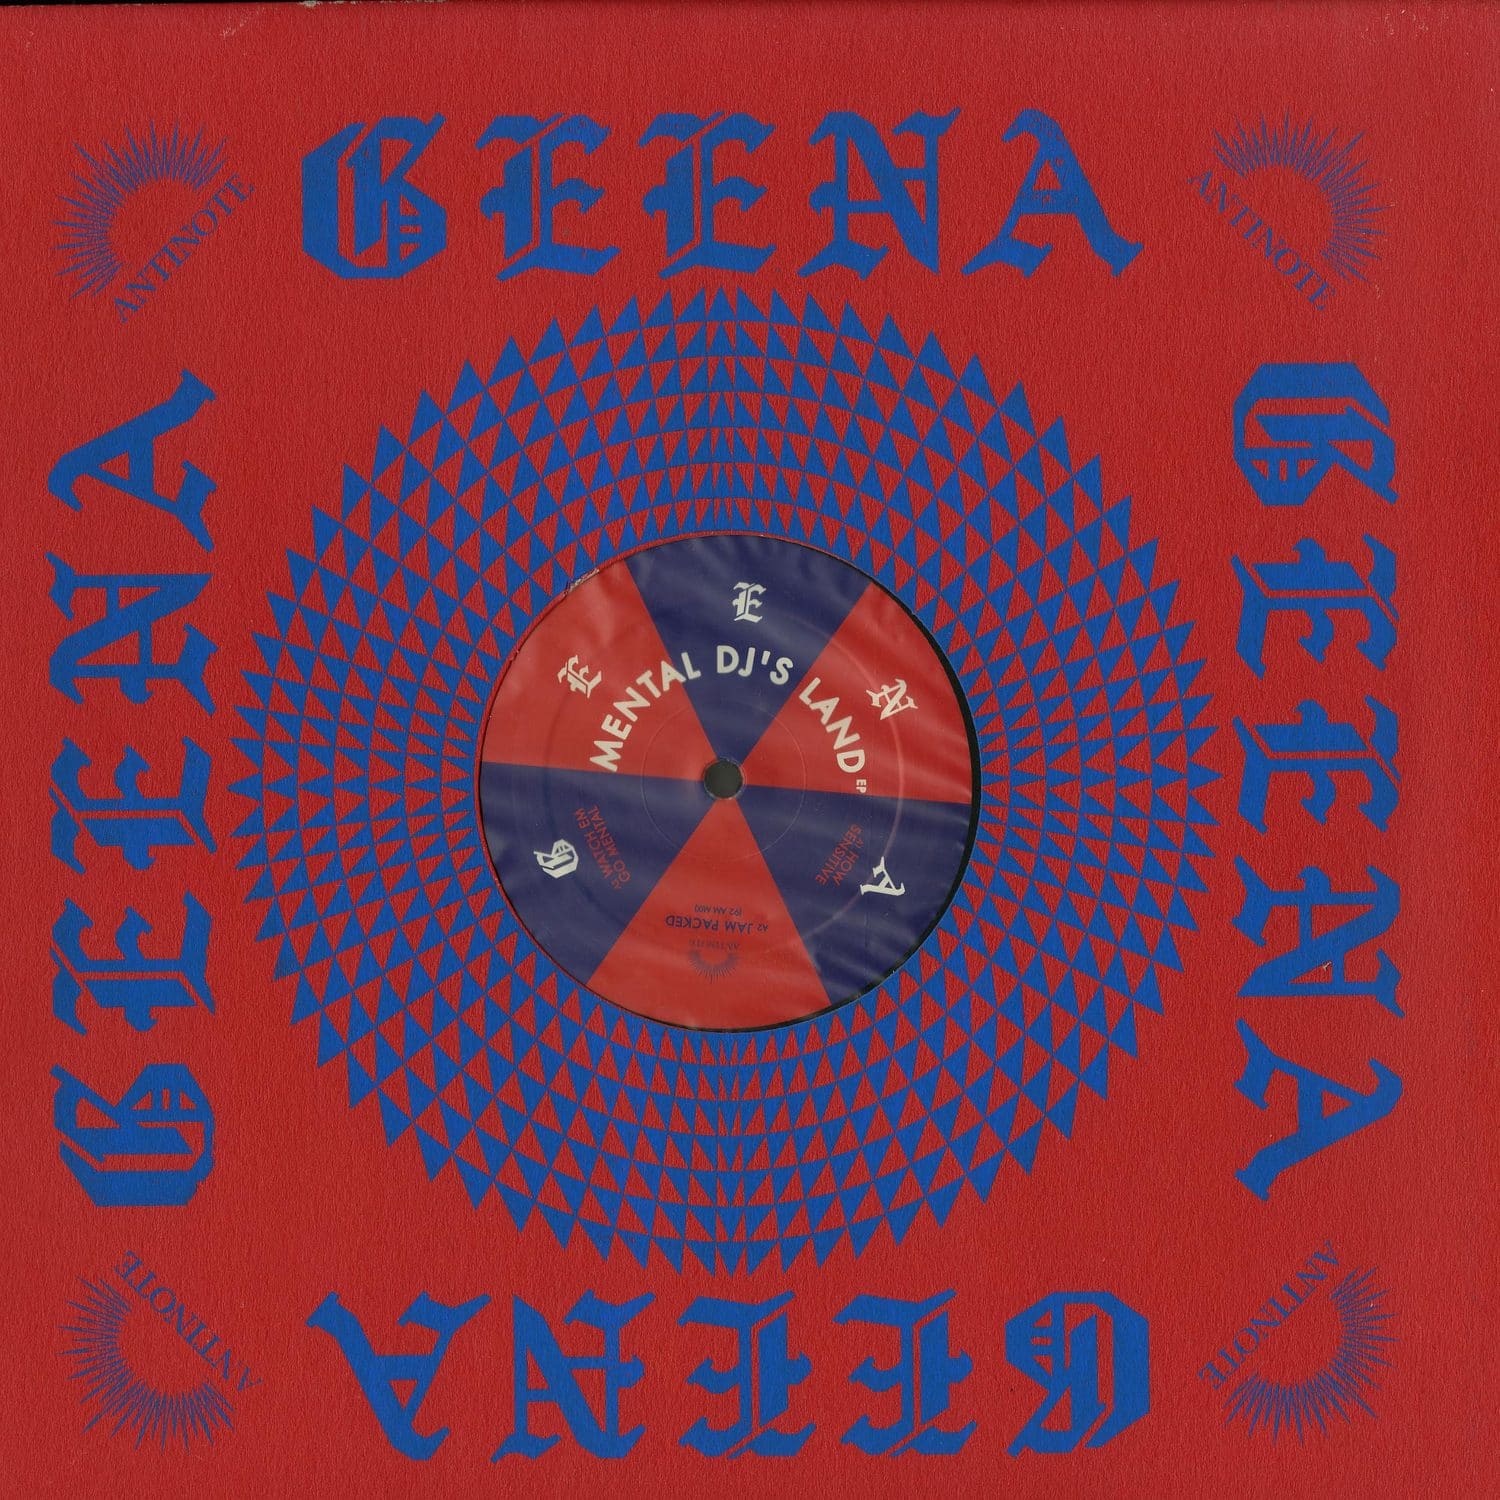 Geena - MENTAL DJS LAND